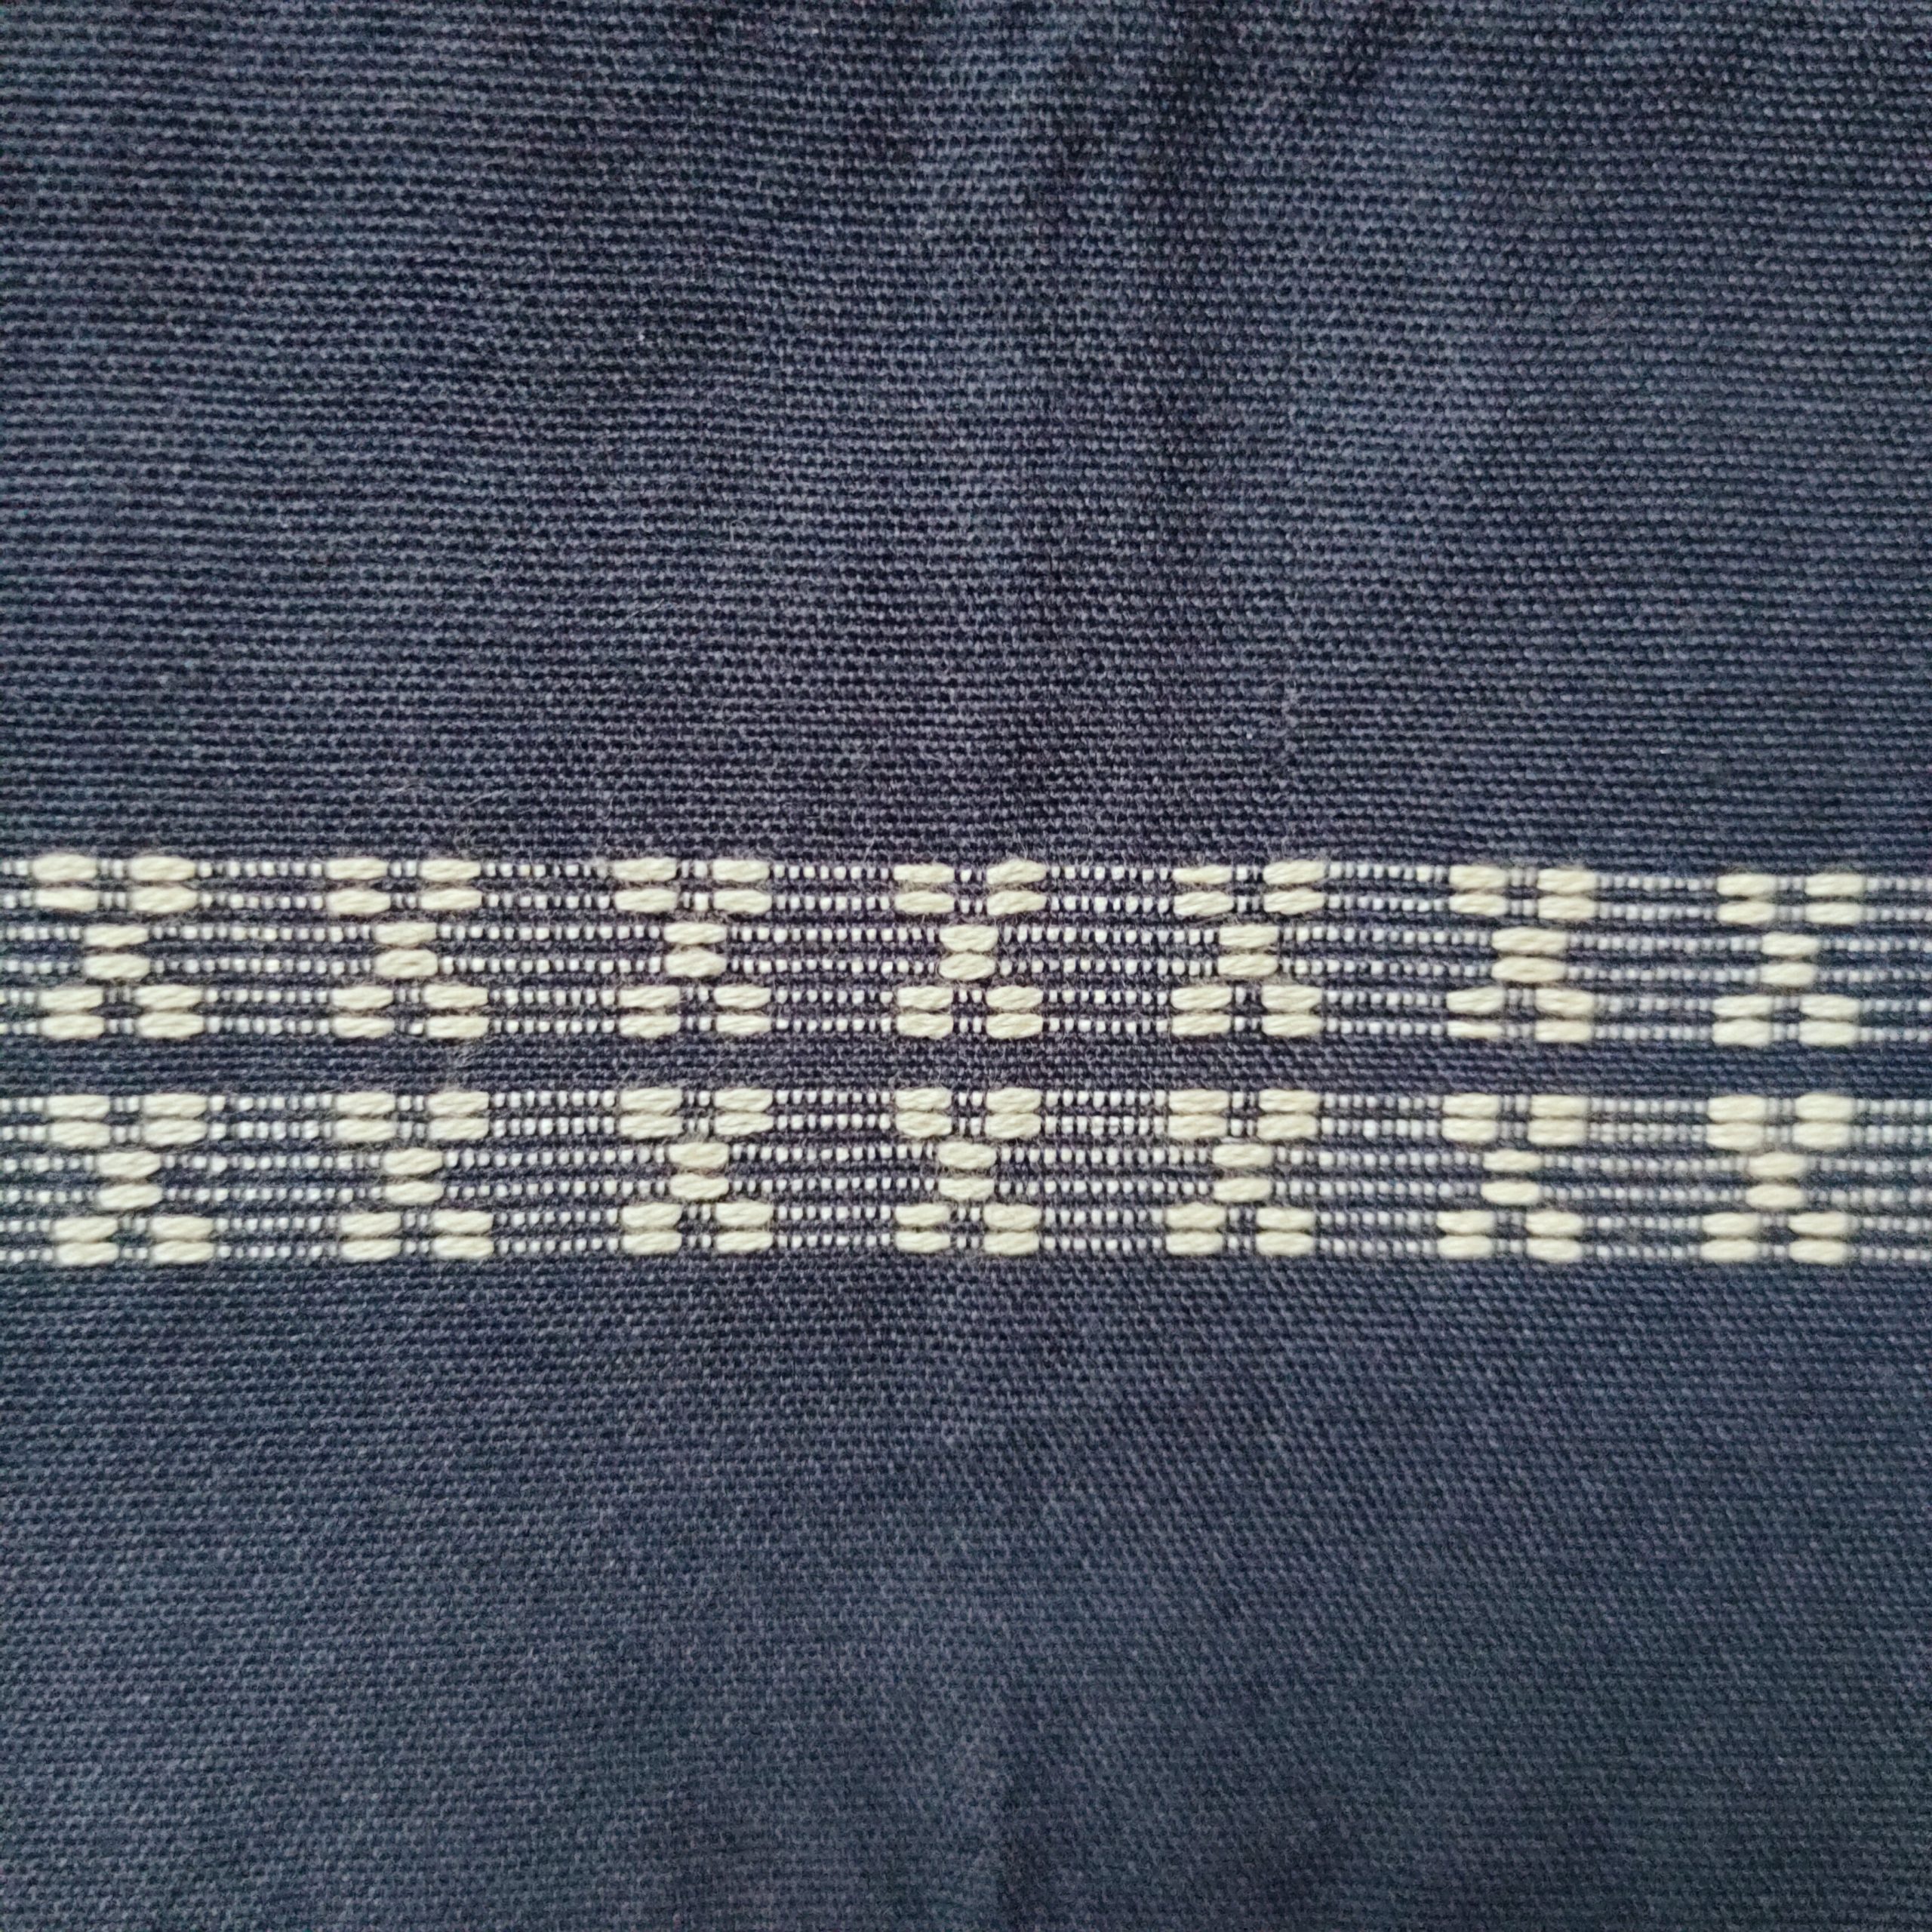 Panublix hablon weave